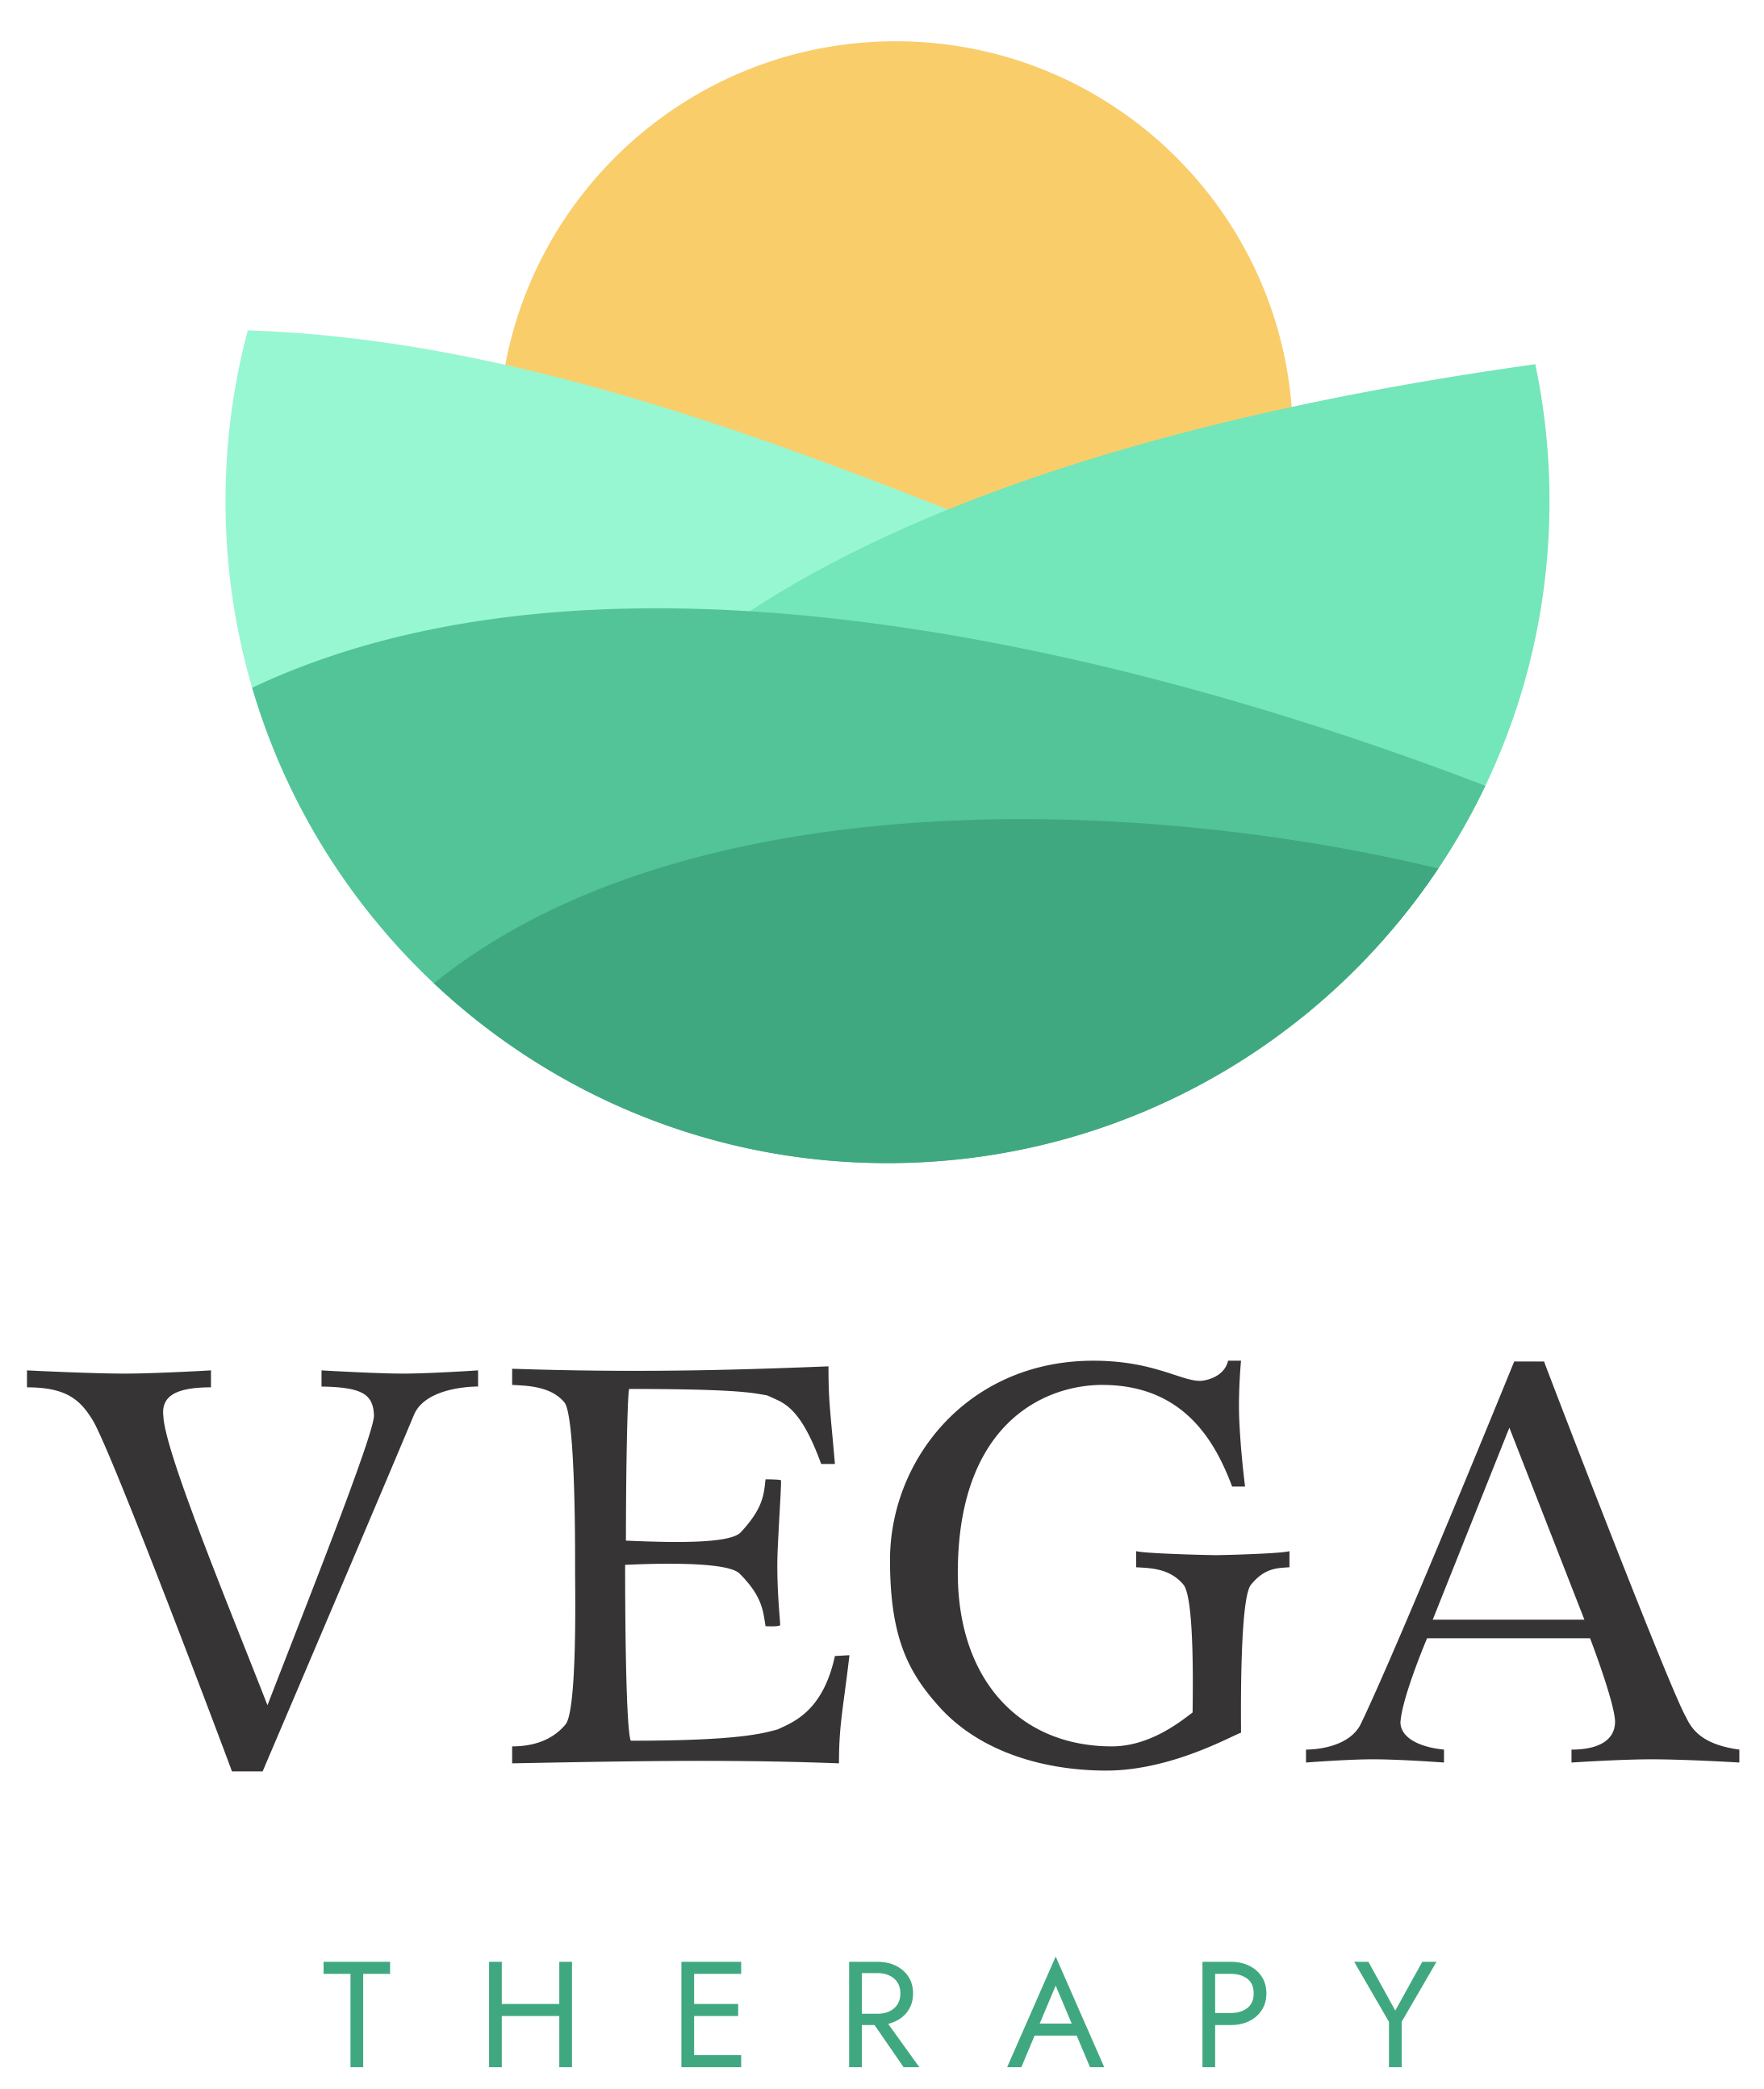 Vega Therapy